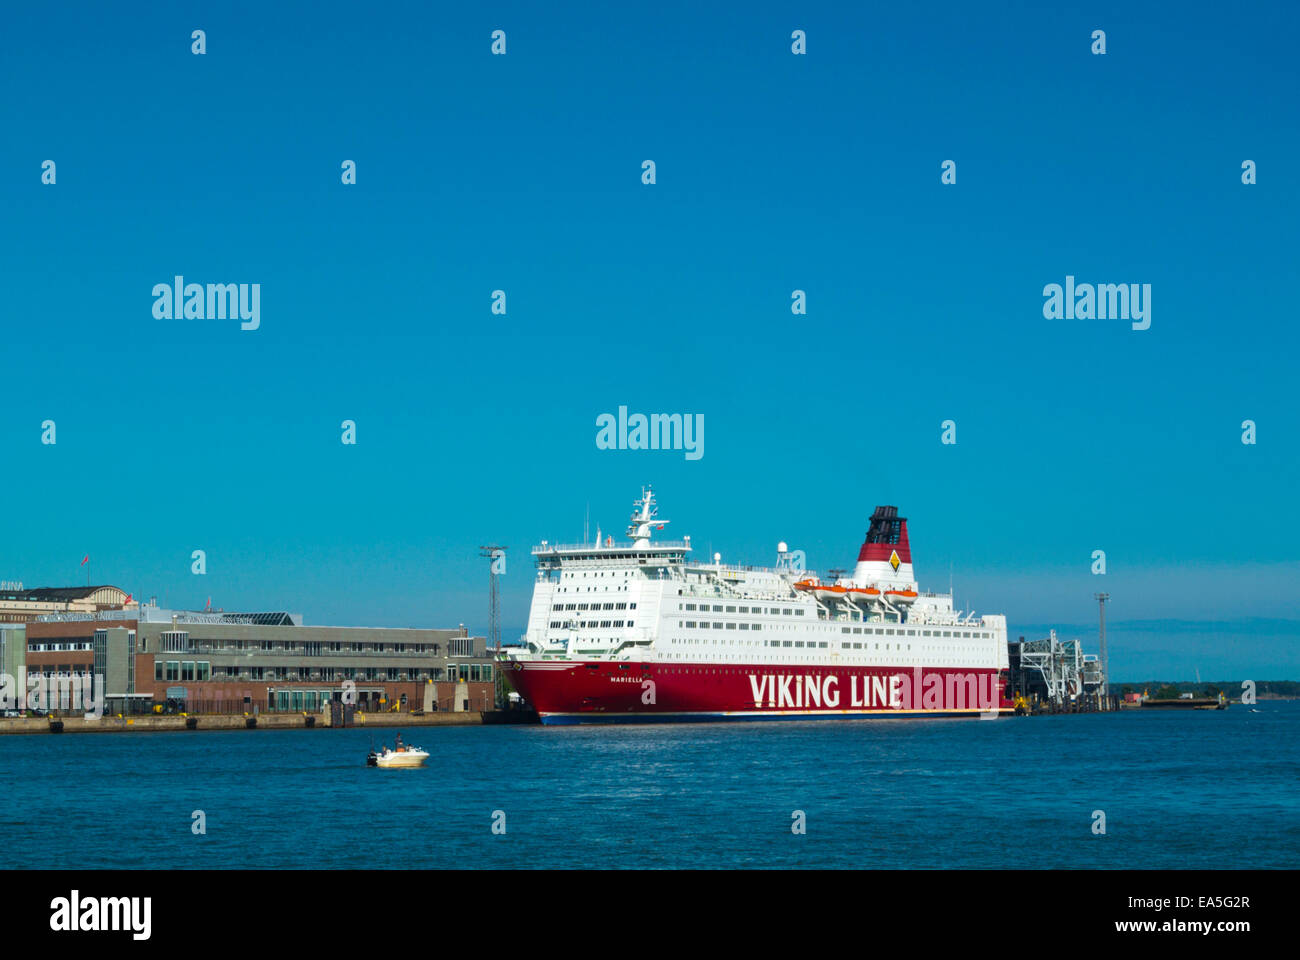 Viking Line Crucero en ferry a Estocolmo, Eteläranta Pier, el centro de Helsinki, Finlandia, Europa Foto de stock